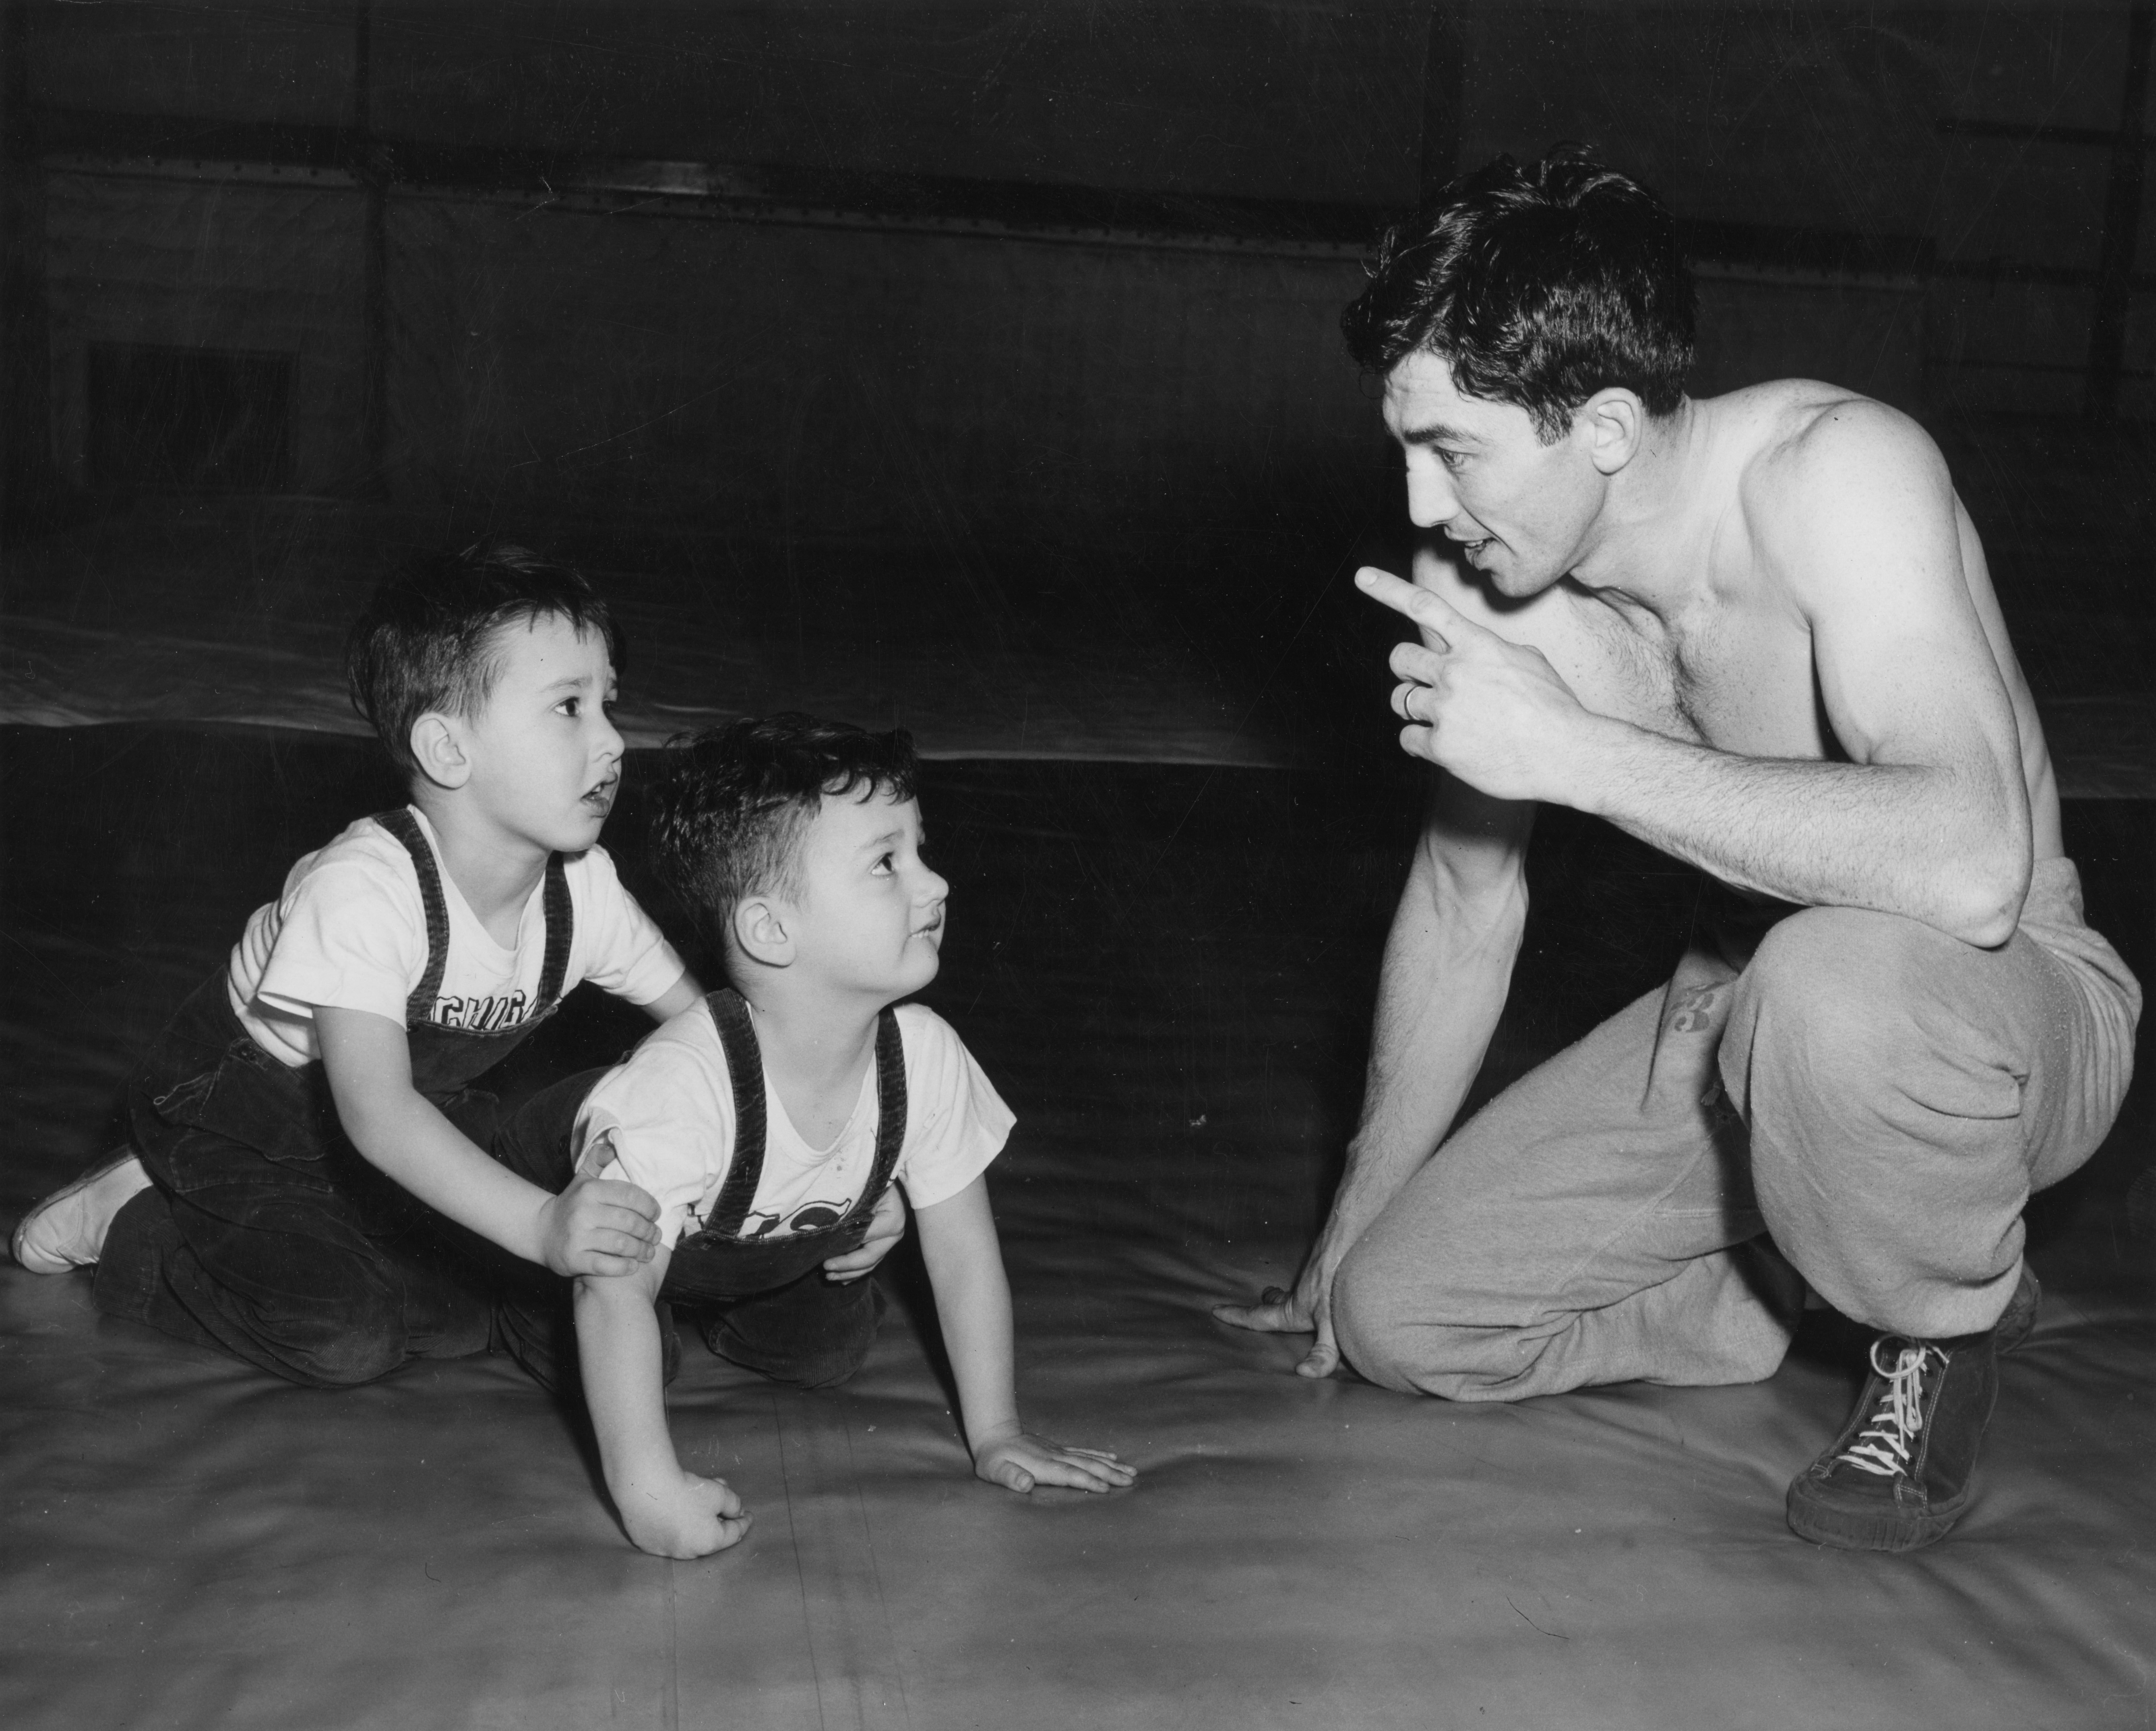 Wrestler from Spartan Varsity Team, 1949